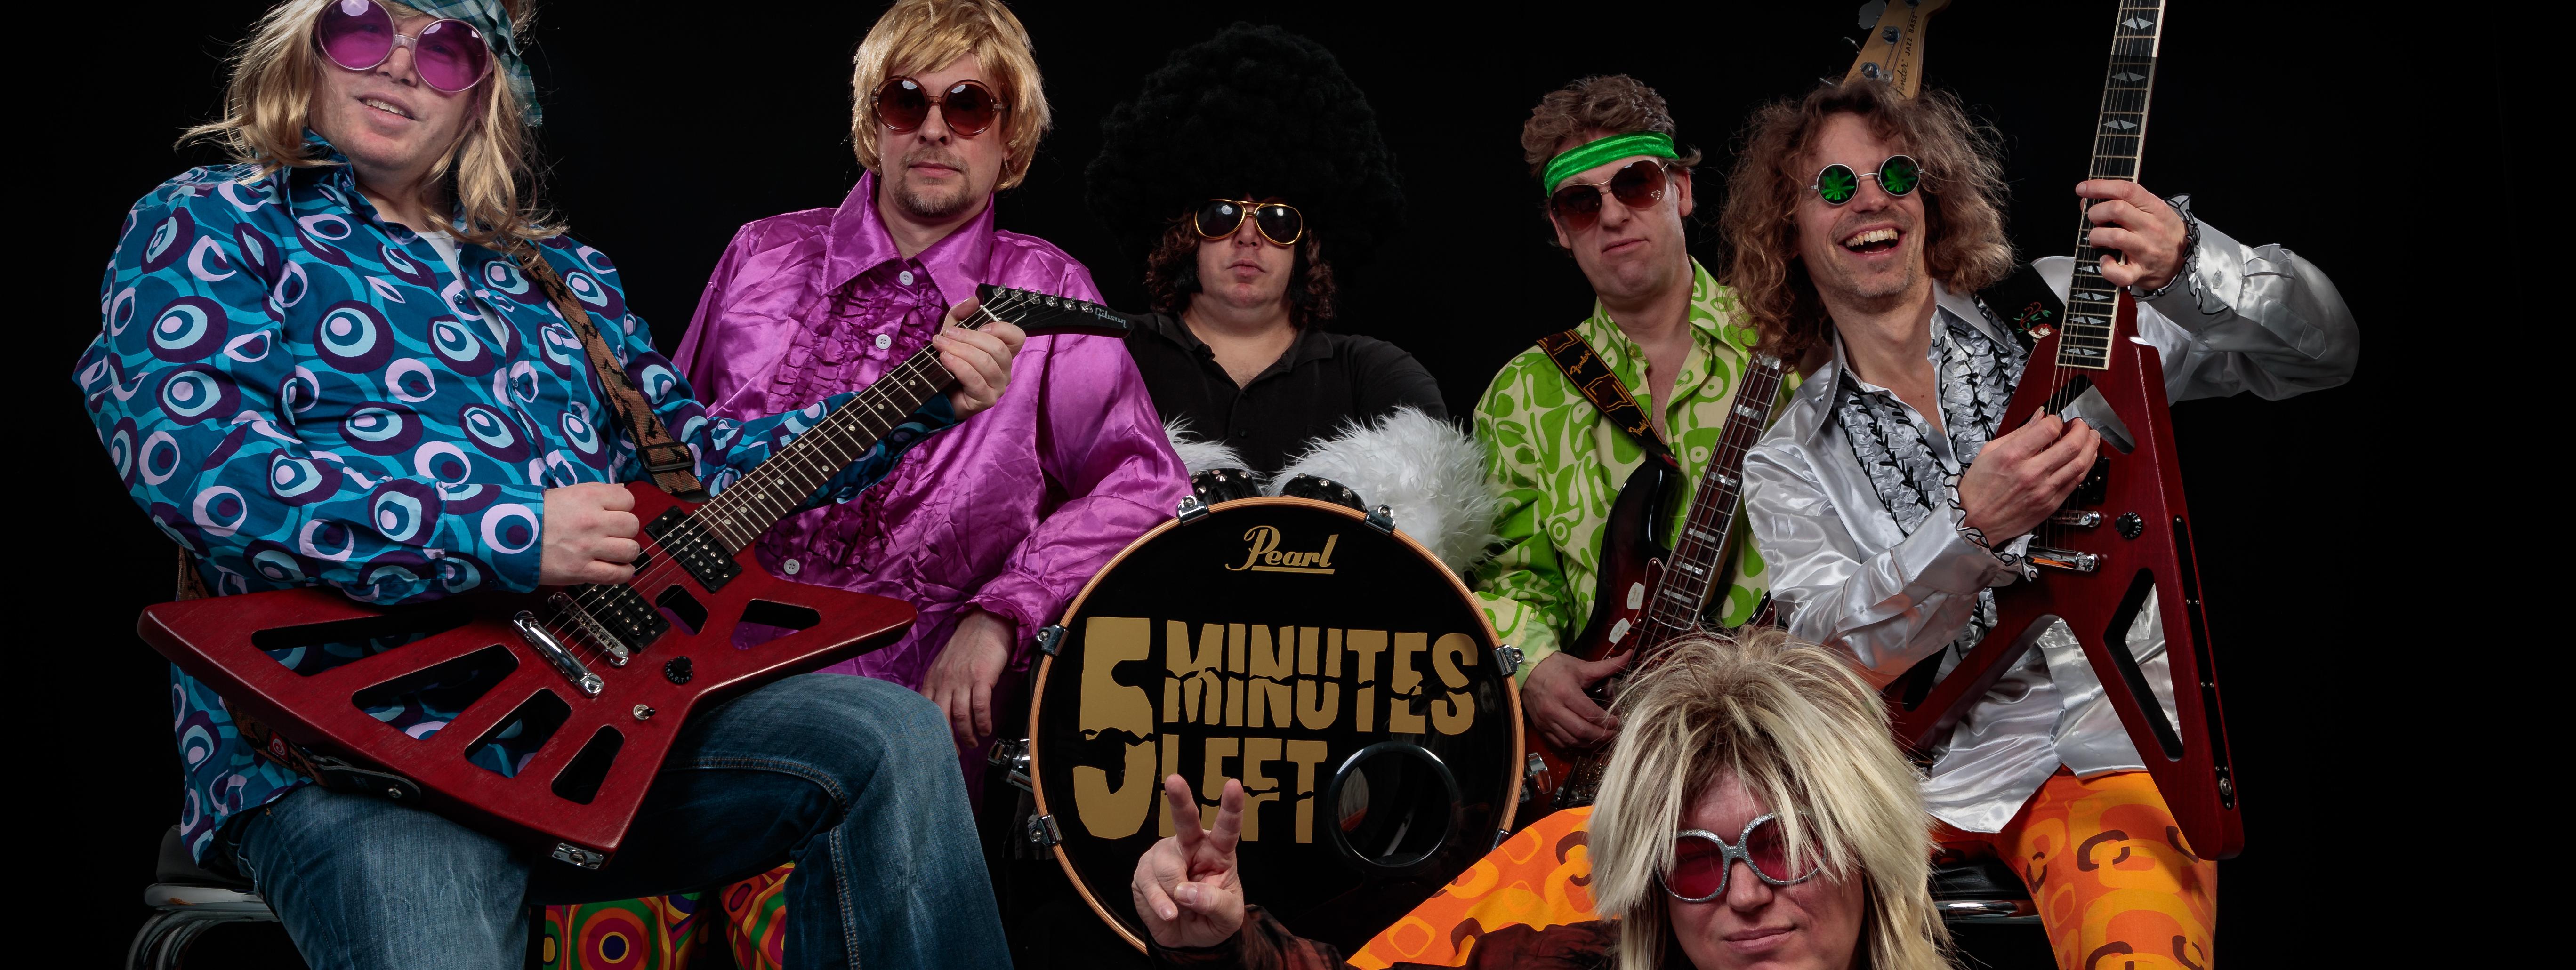 Fünf Musiker sitzen, einer liegt vor ihnen, drei haben E-Gitarren, der Musiker in der Mitte hat die Basedrum seines Schlagzeuges auf dem Schoß. Alle tragen große Sonnenbrillen und schrill-bunte Kleidung aus den 70er Jahren.